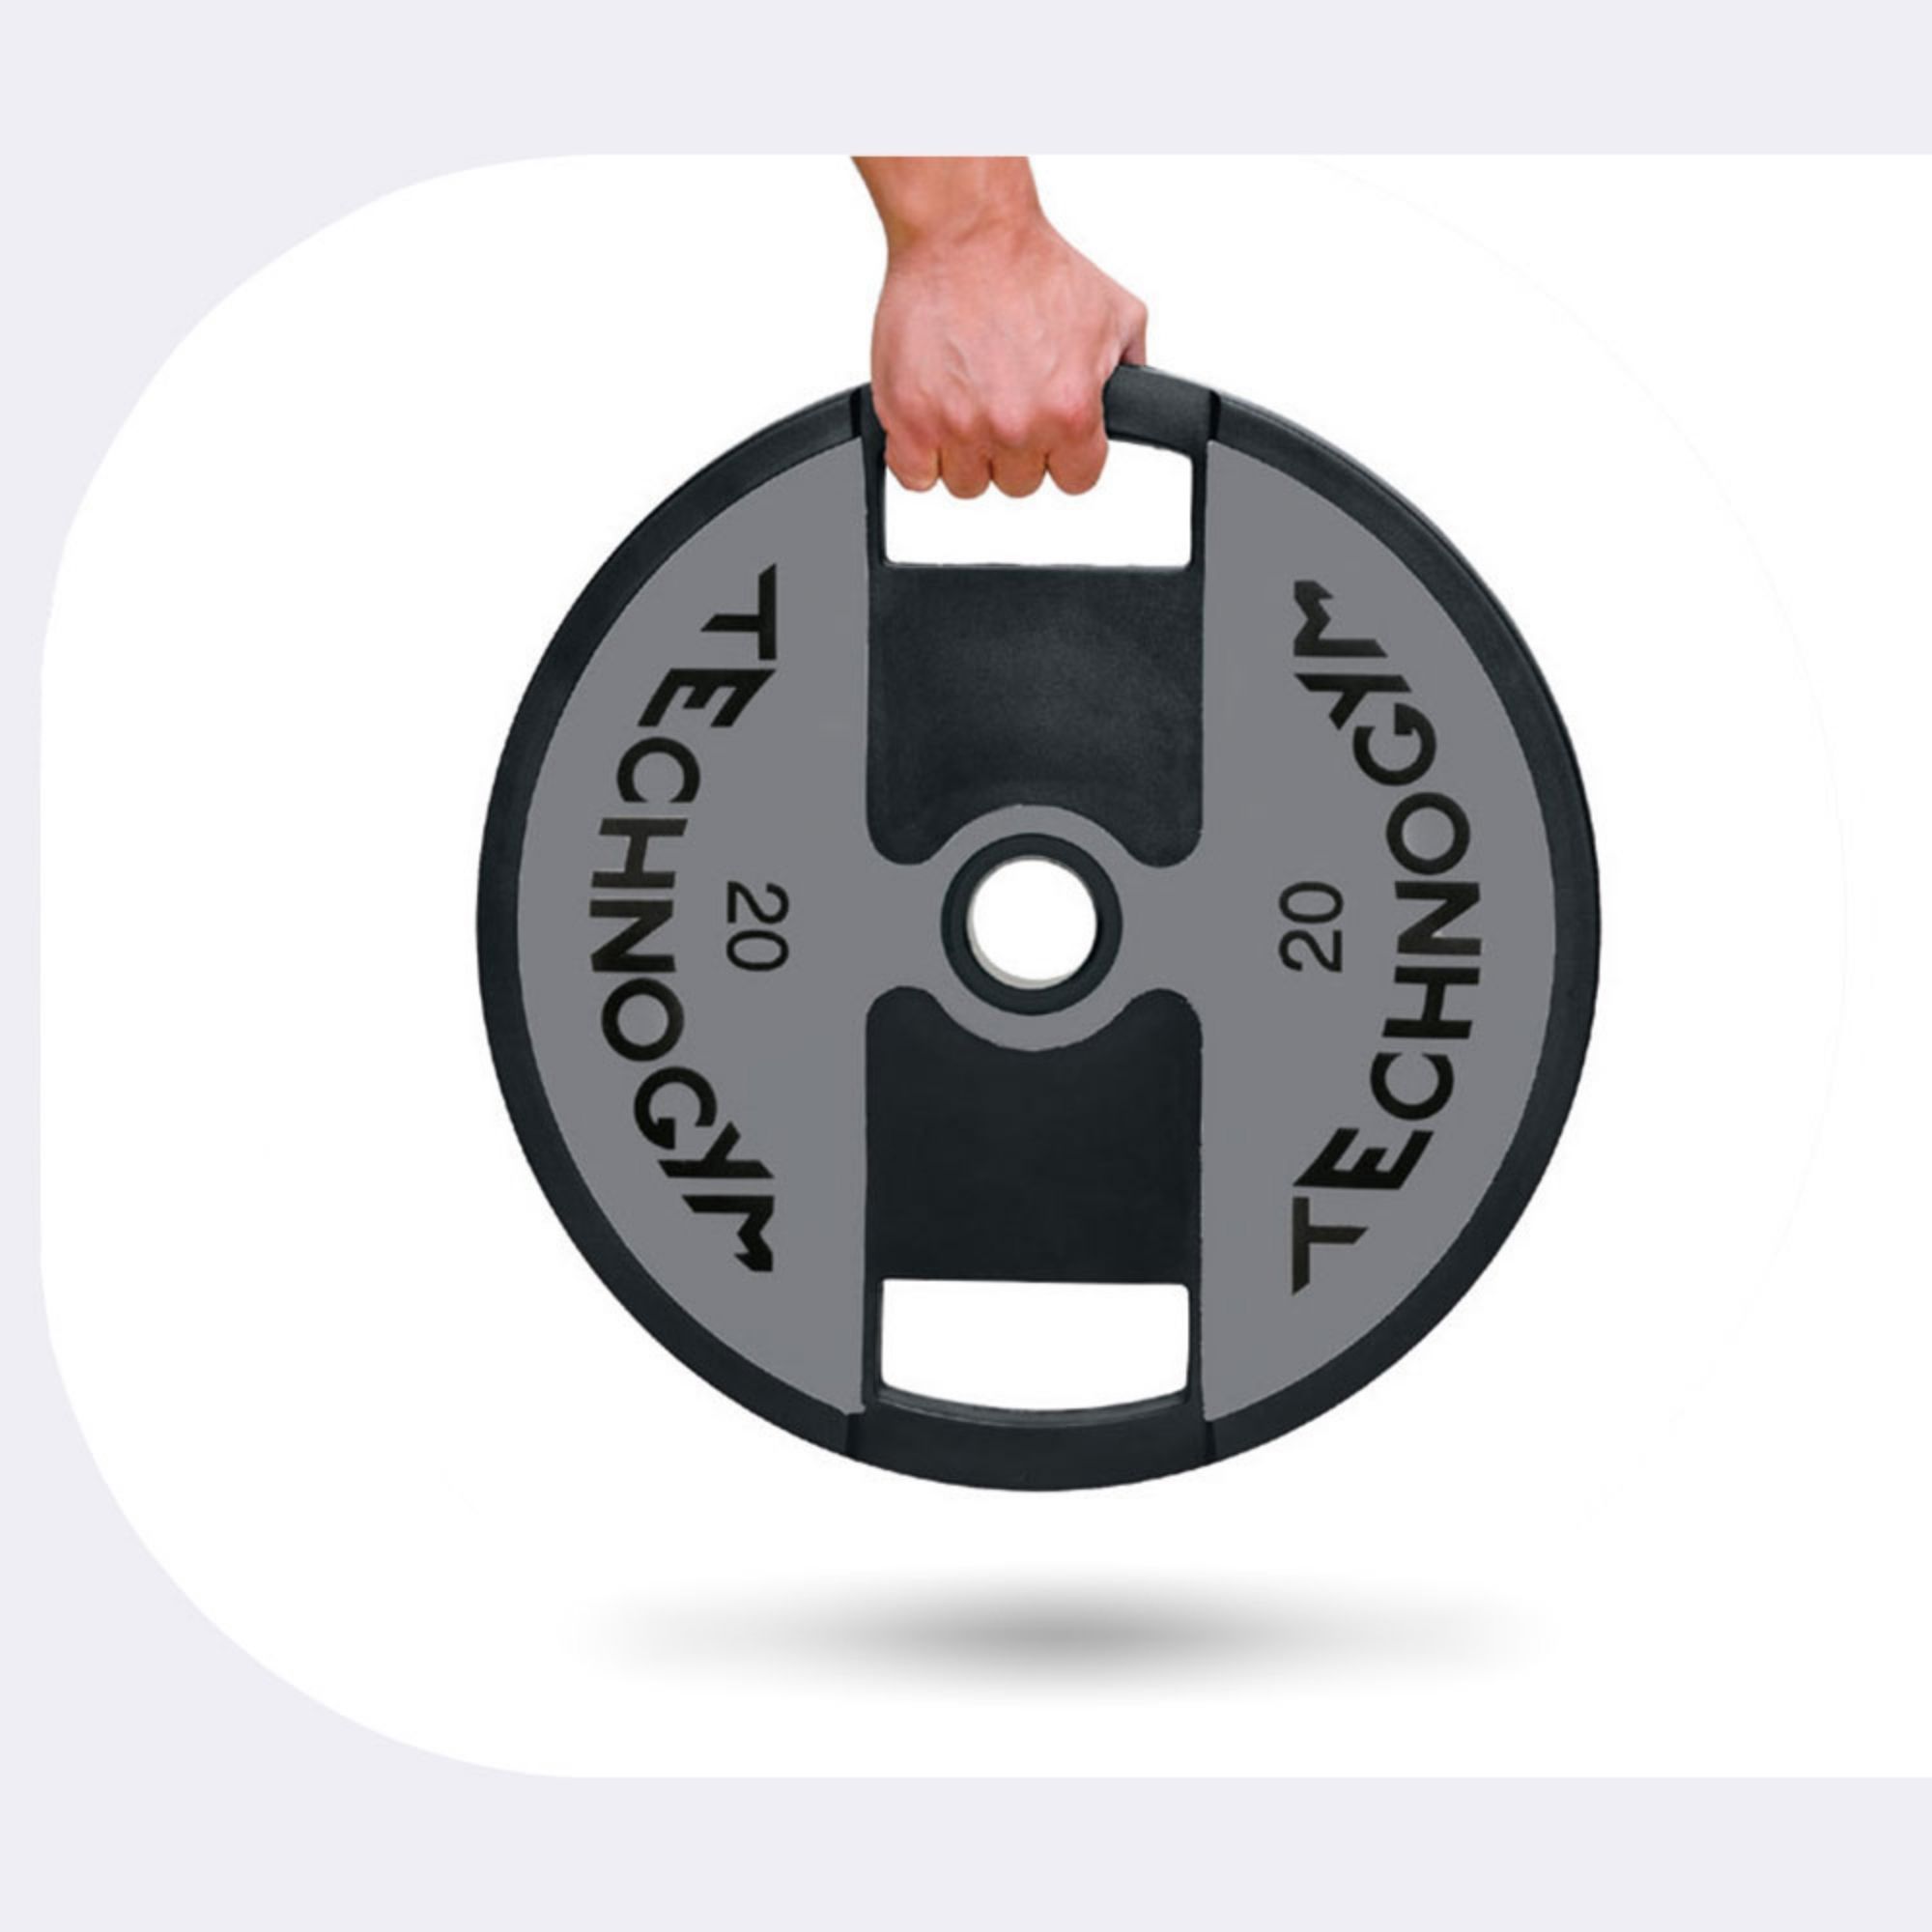 Les disques de poids en musculation : guide d'achat